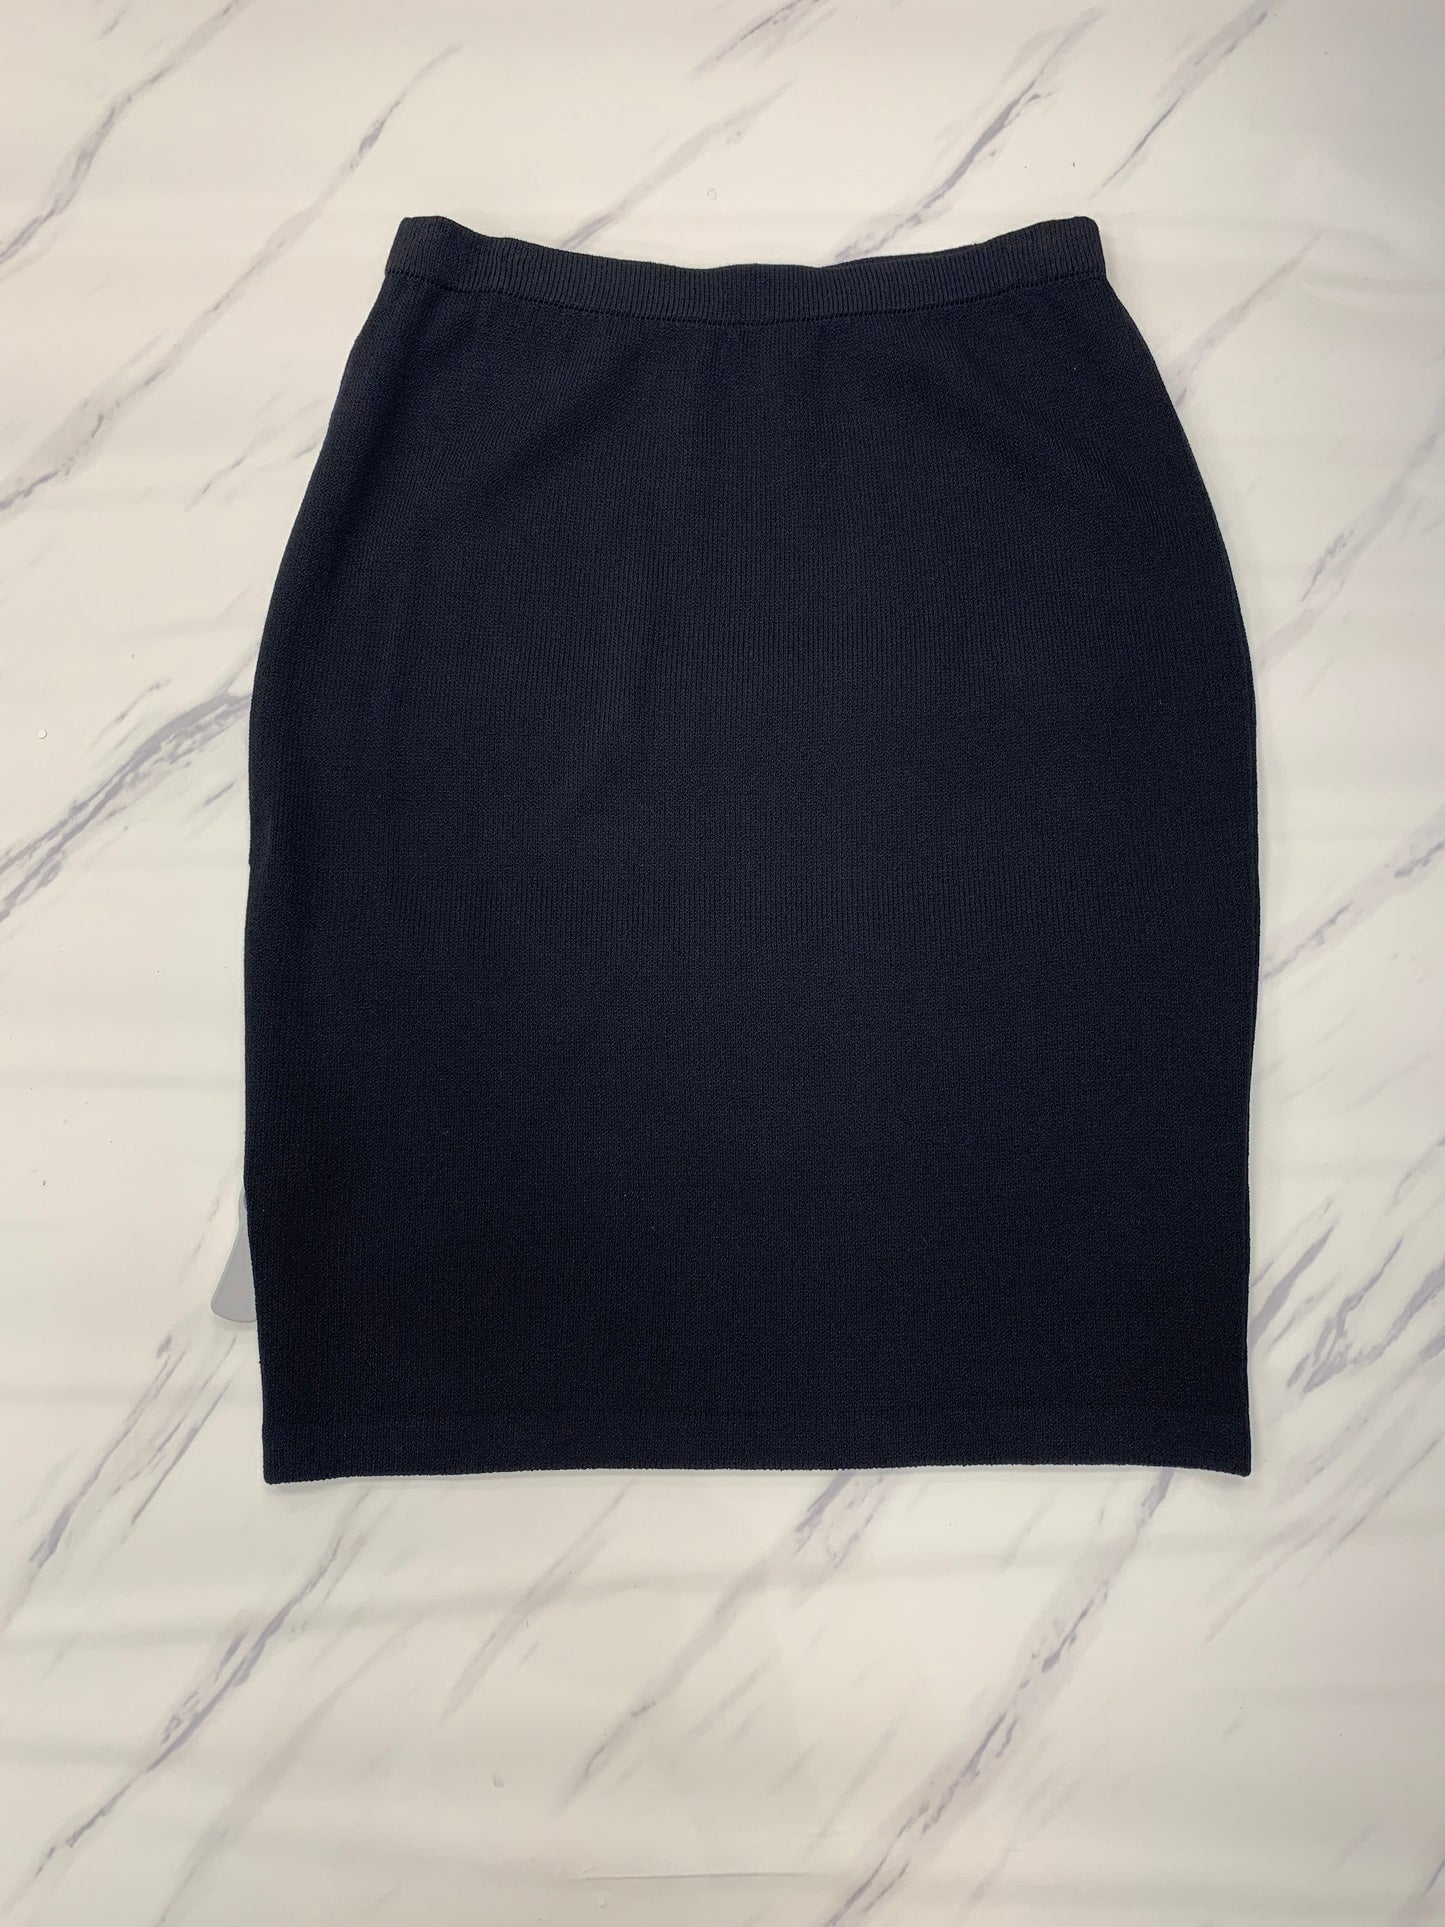 Black Skirt Designer St John Collection, Size 14